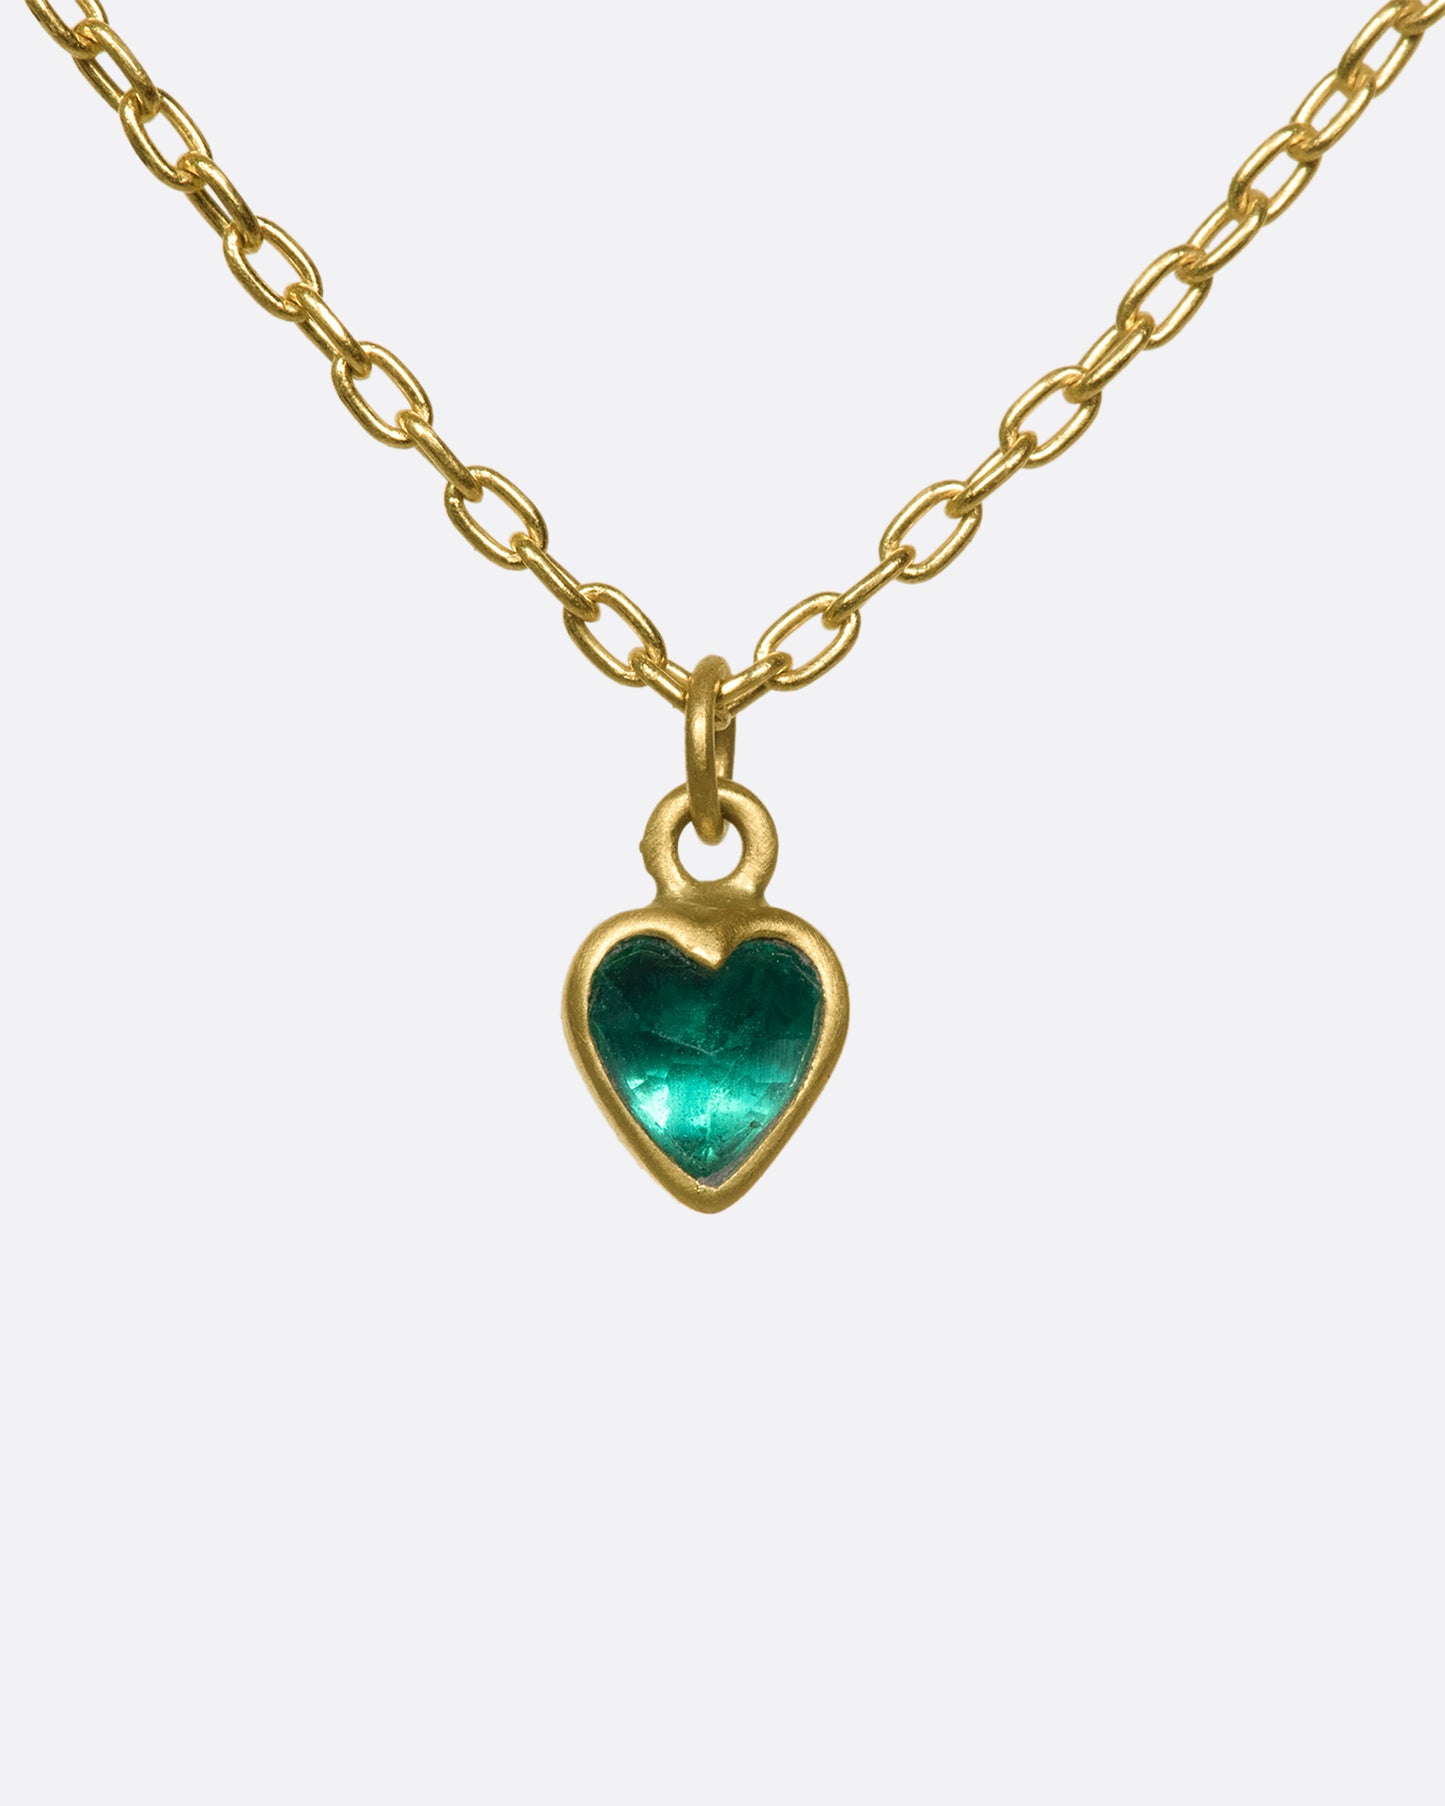 A closeup of a bezel set emerald heart pendant hanging on a gold chain.